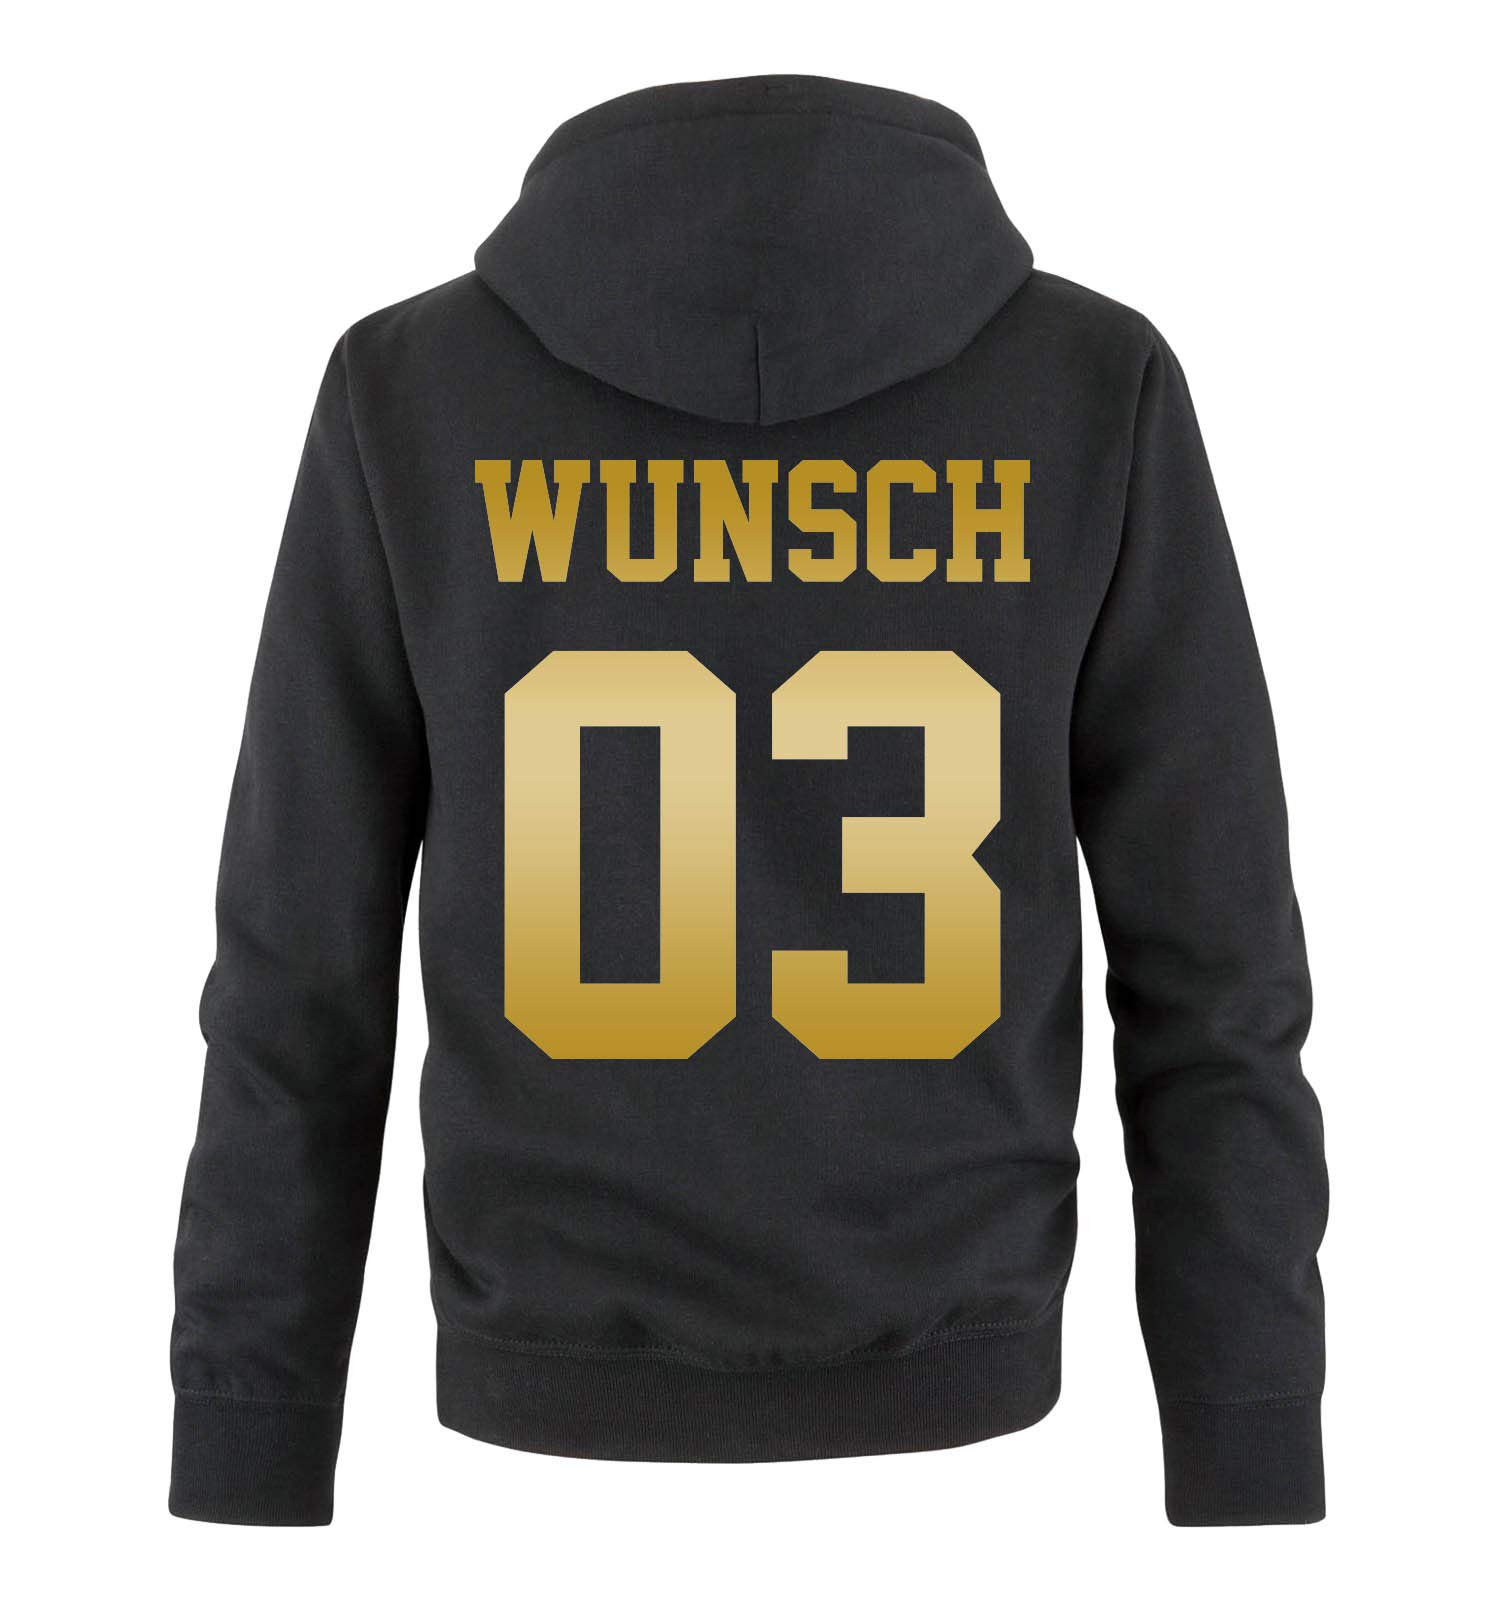 Comedy Shirts - Wunsch - Herren Hoodie - Schwarz/Gold - Gr. XL